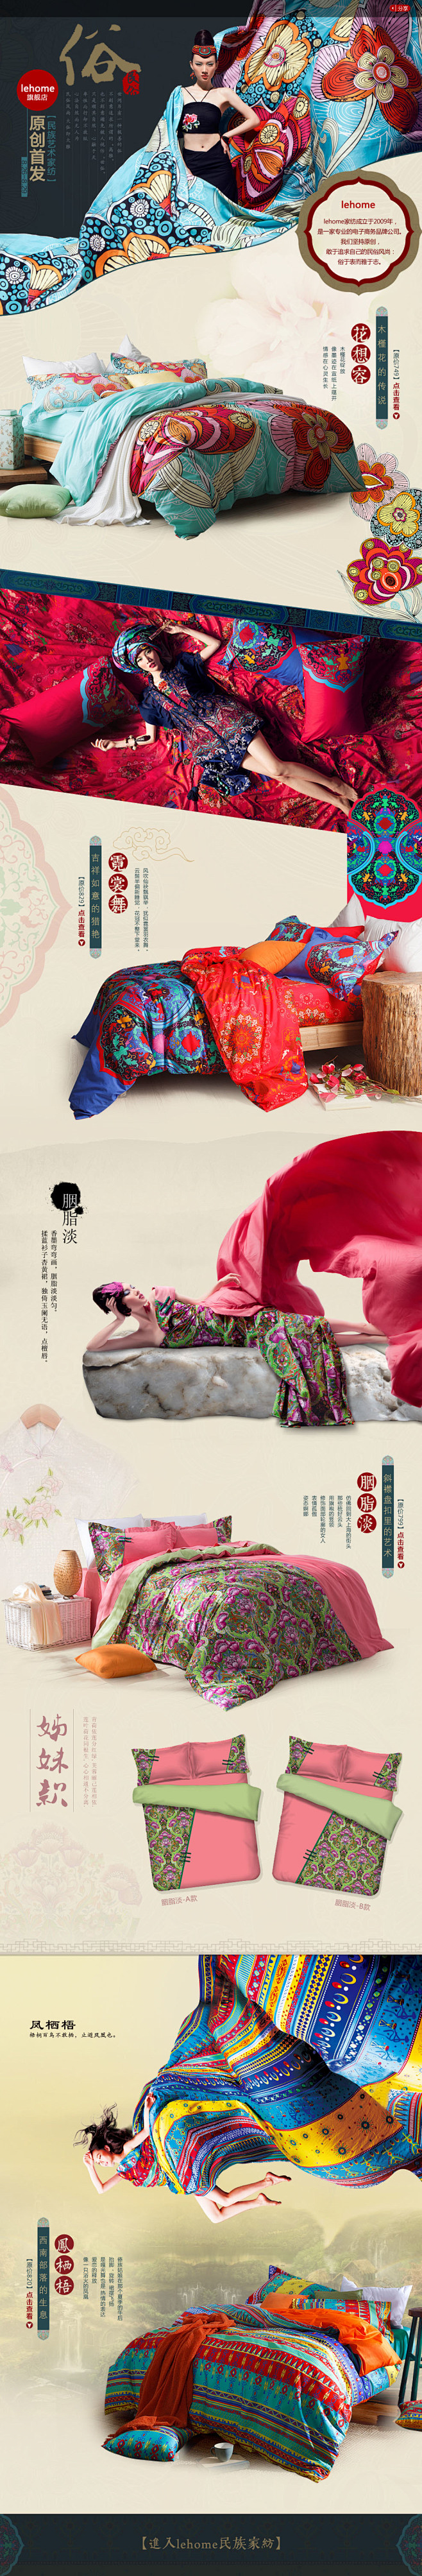 中国风 床上用品 排版 设计